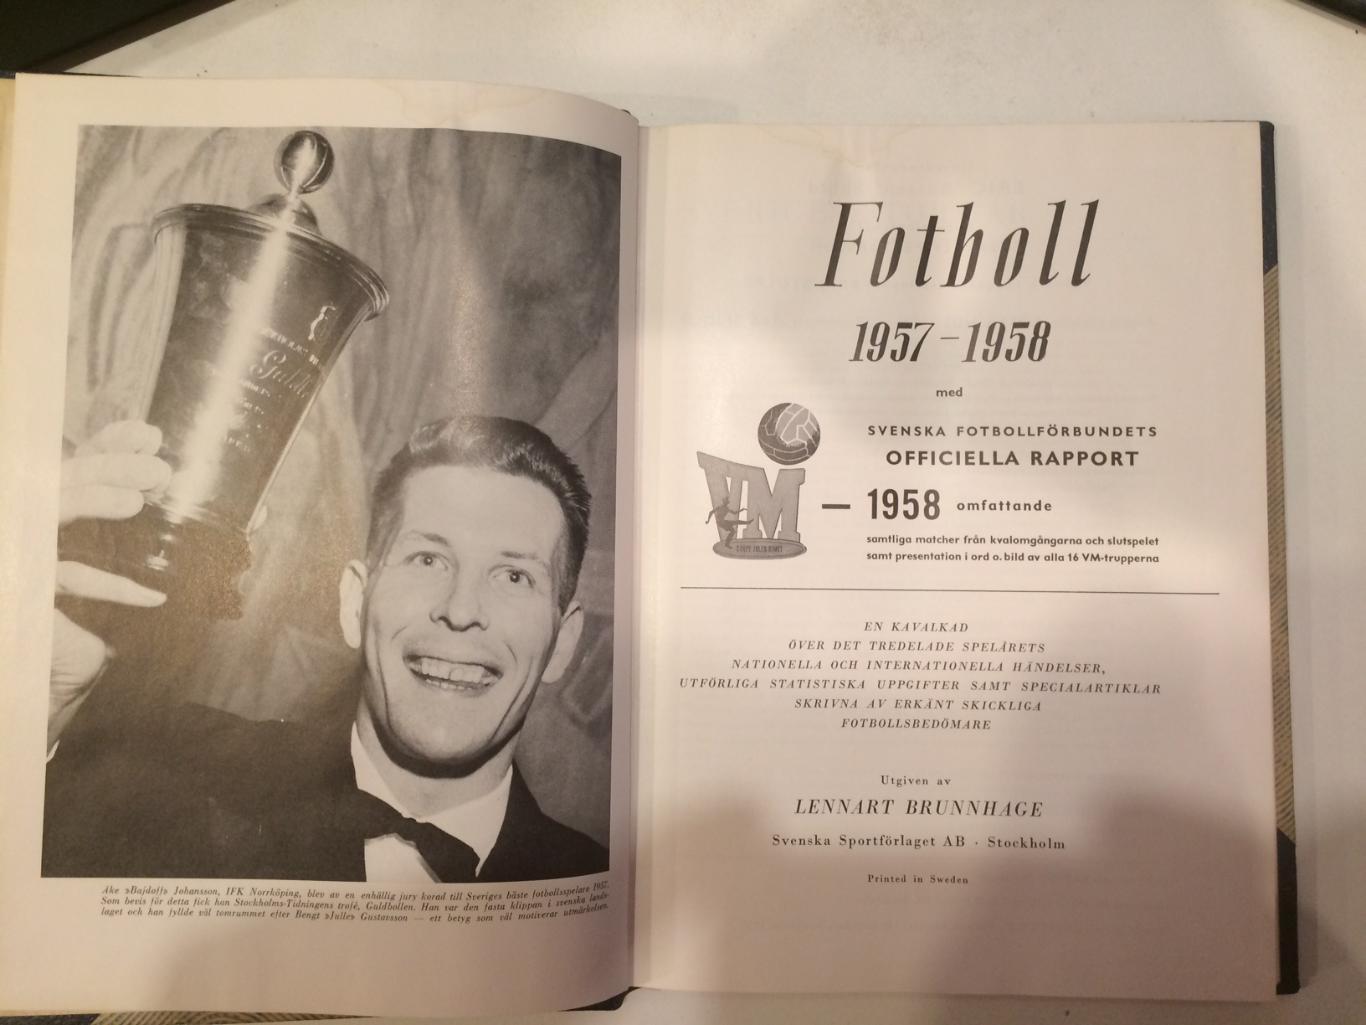 шведский ежегодник 1957-1958 чемпионат мира Пеле